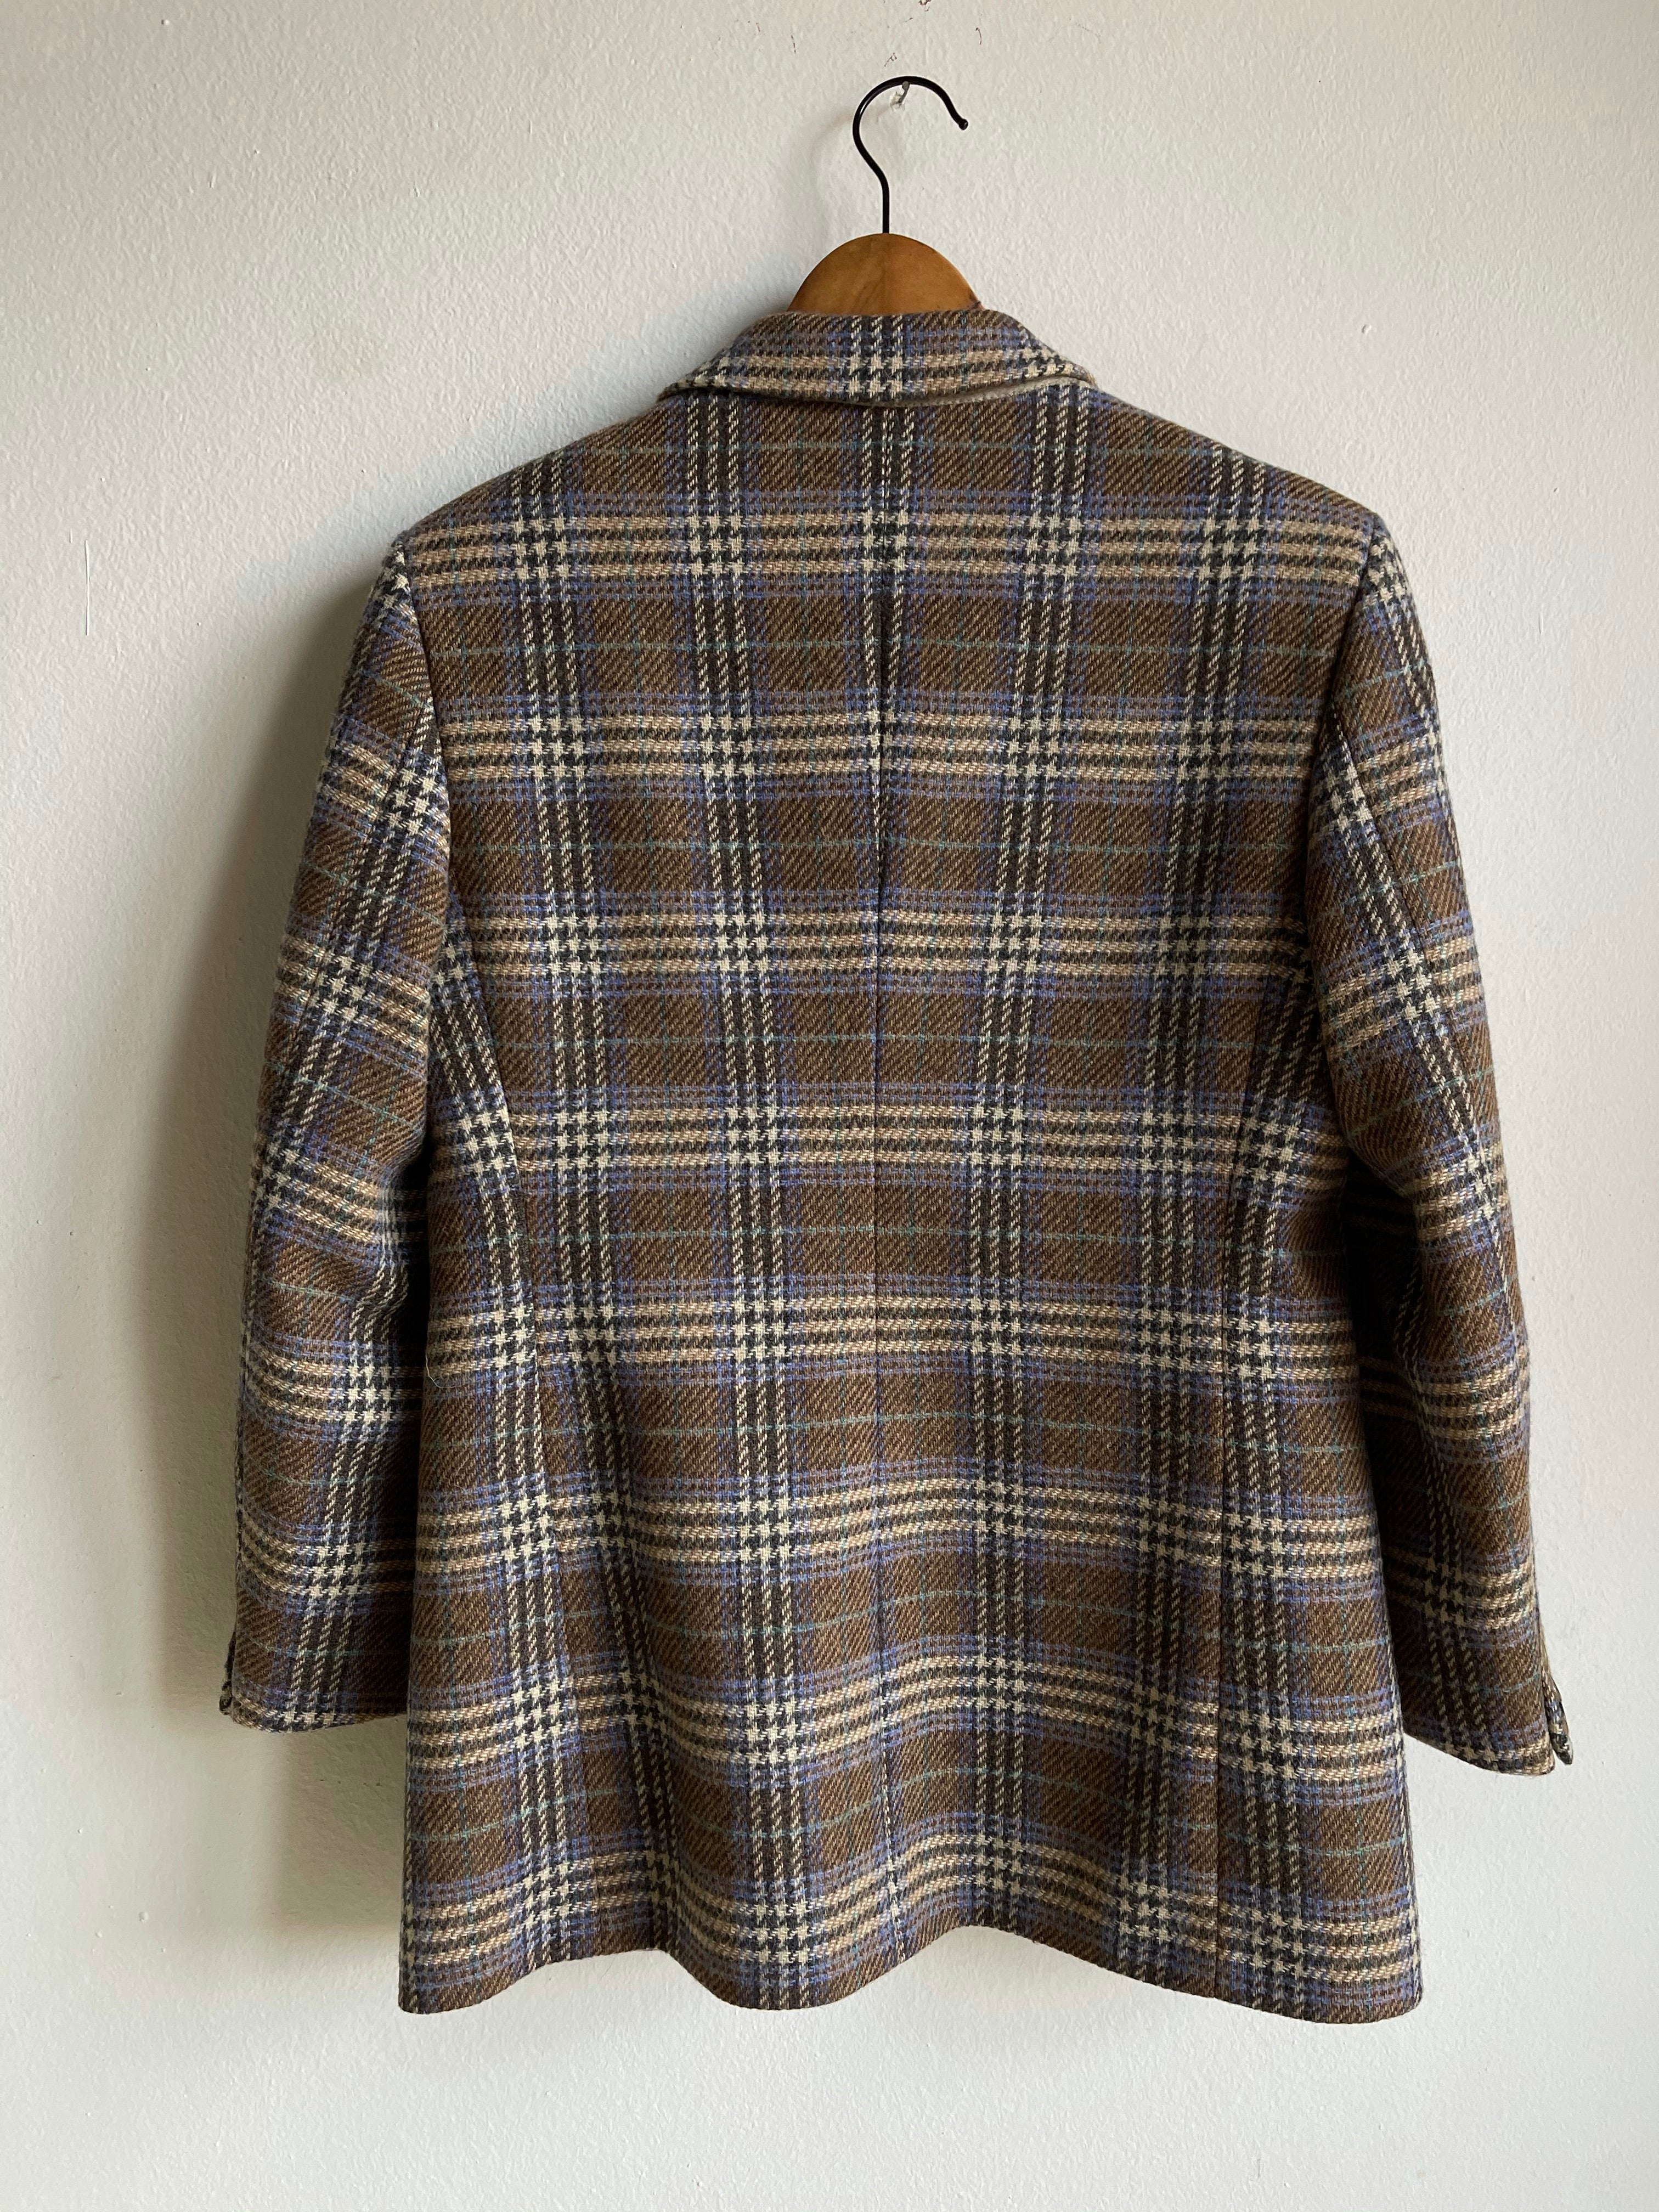 Wool checkered blazer